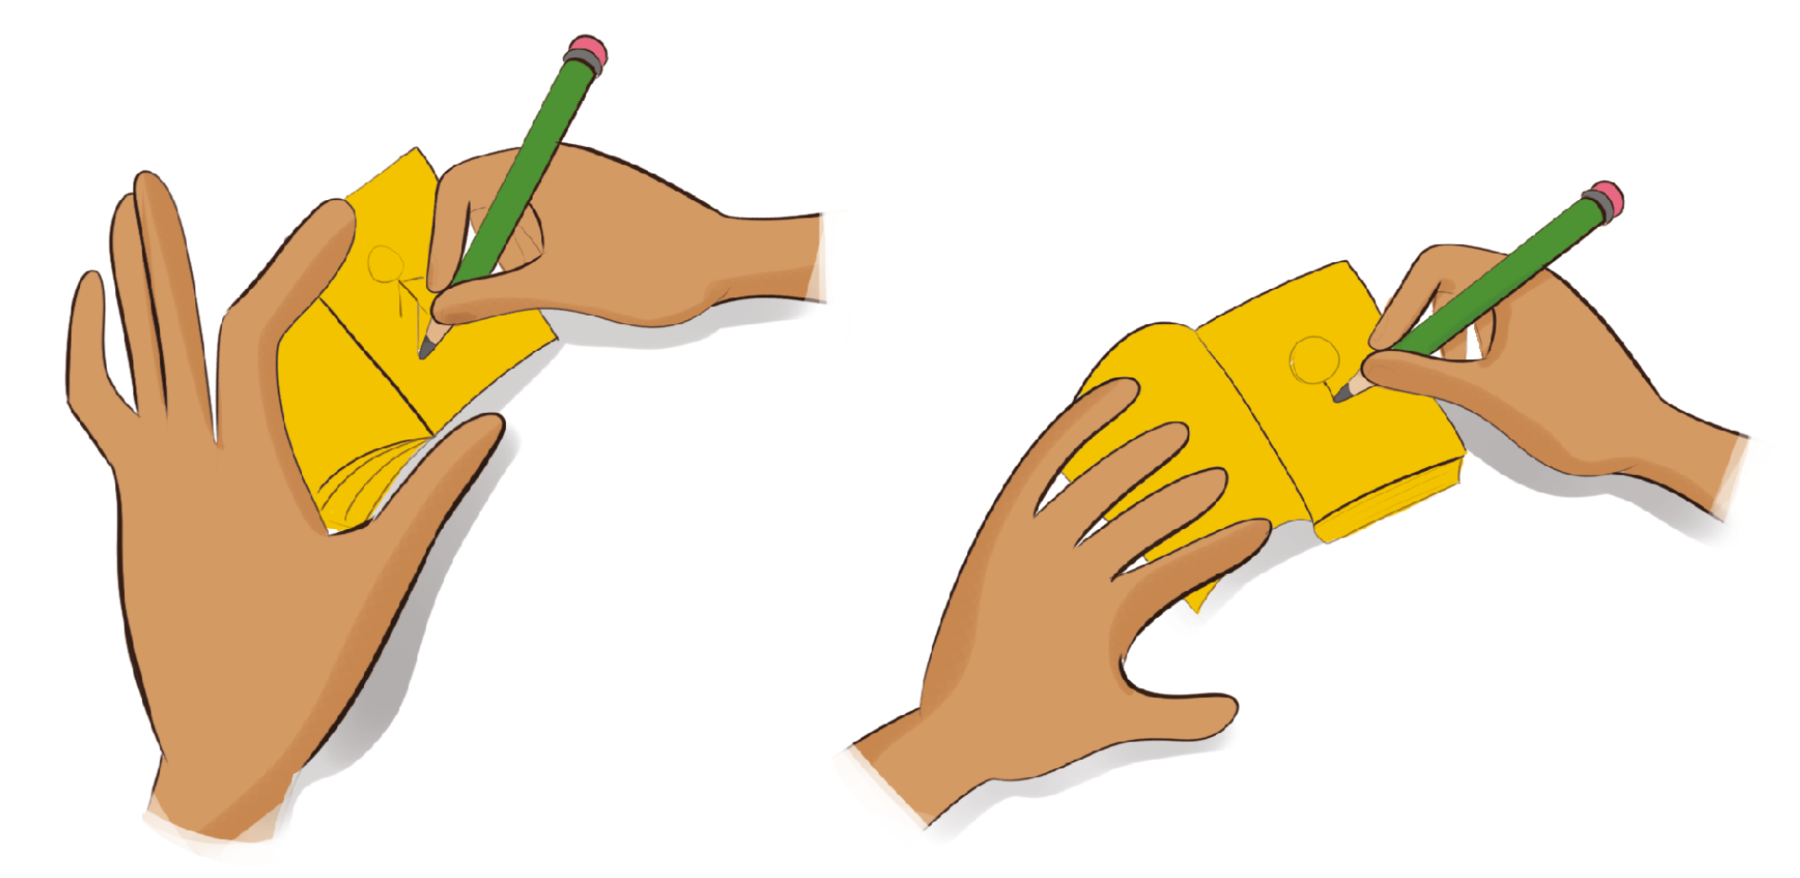 Ilustração. Destaque das mãos de uma pessoa que faz um desenho a lápis no interior de um conjunto de folhas amarelas. O desenho é a silhueta da cabeça e do pescoço de uma pessoa